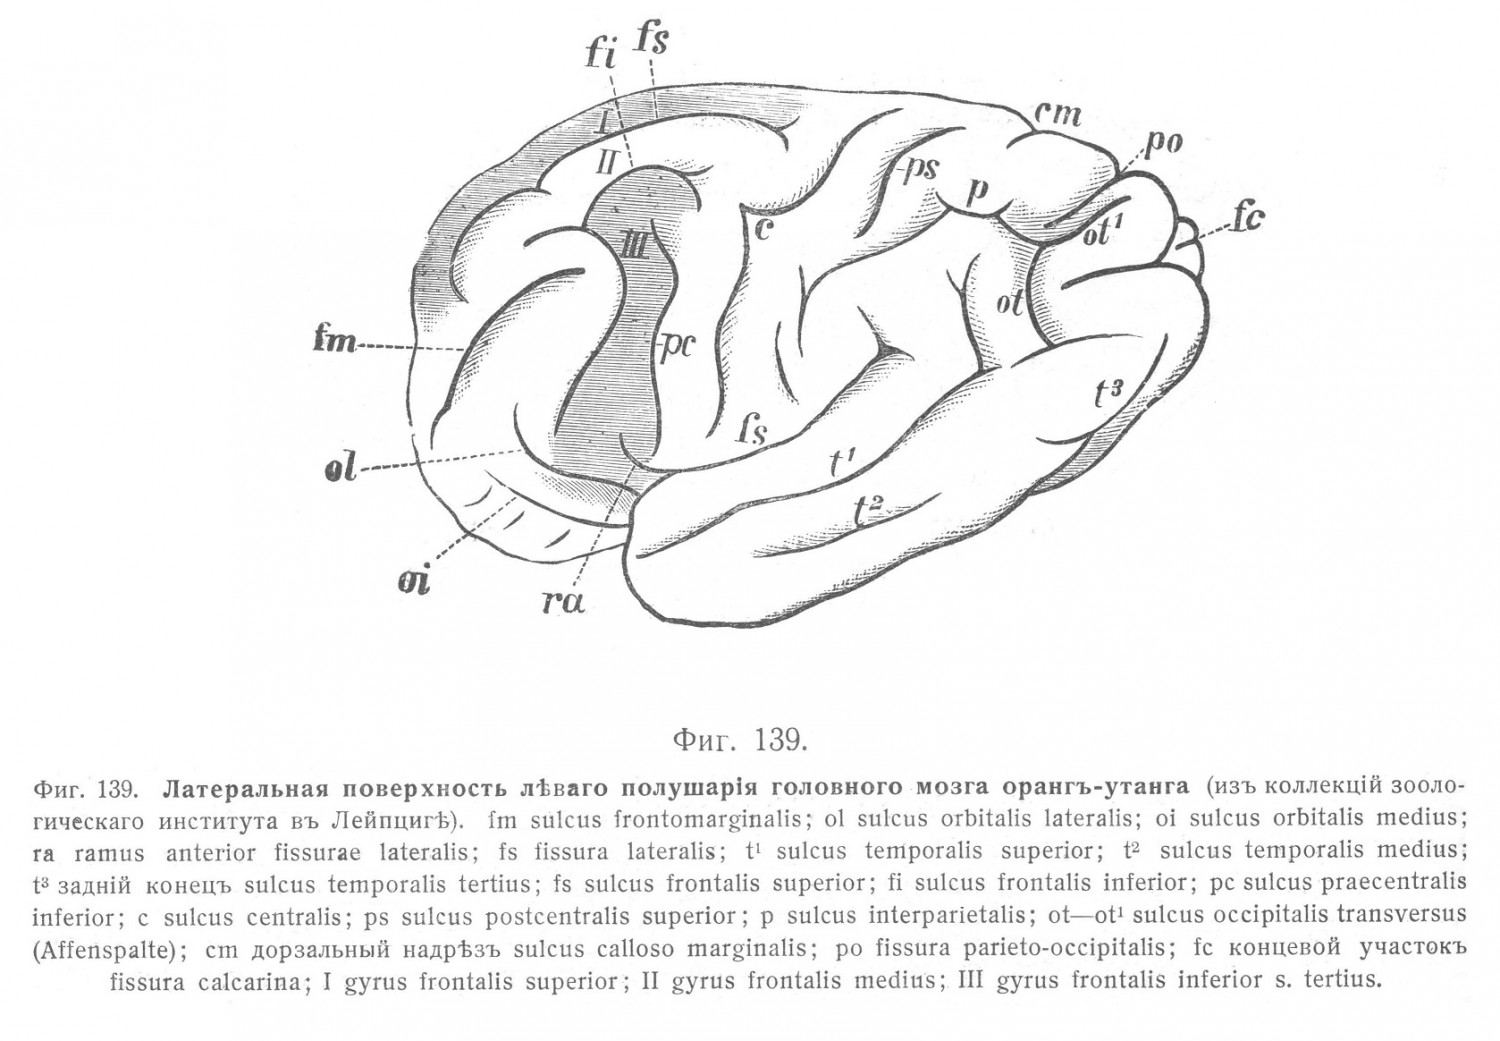 Латеральная поверхность левого полушария головного мозга орангутанга